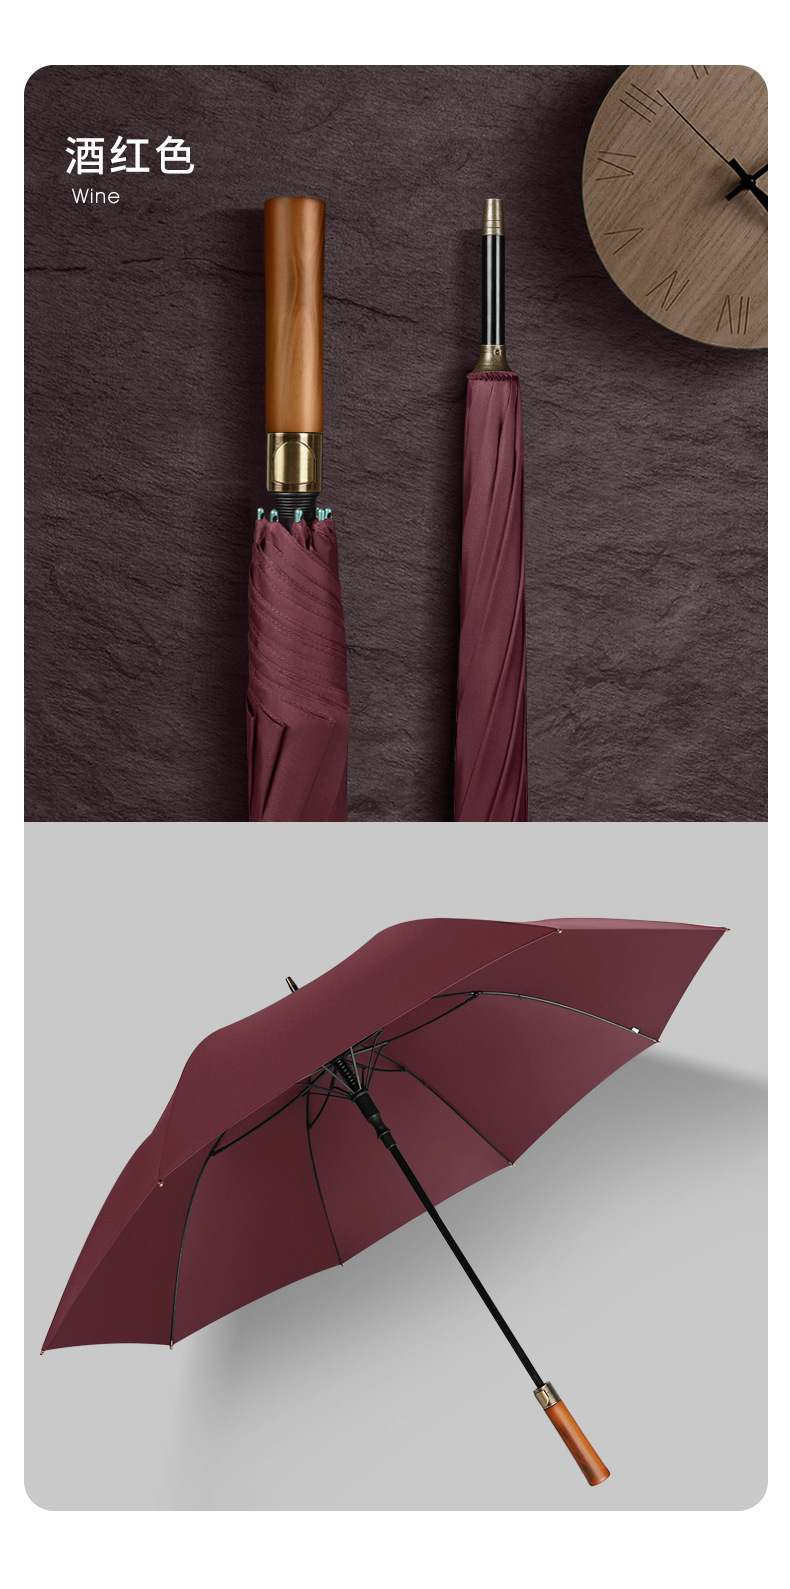 高端礼品雨伞